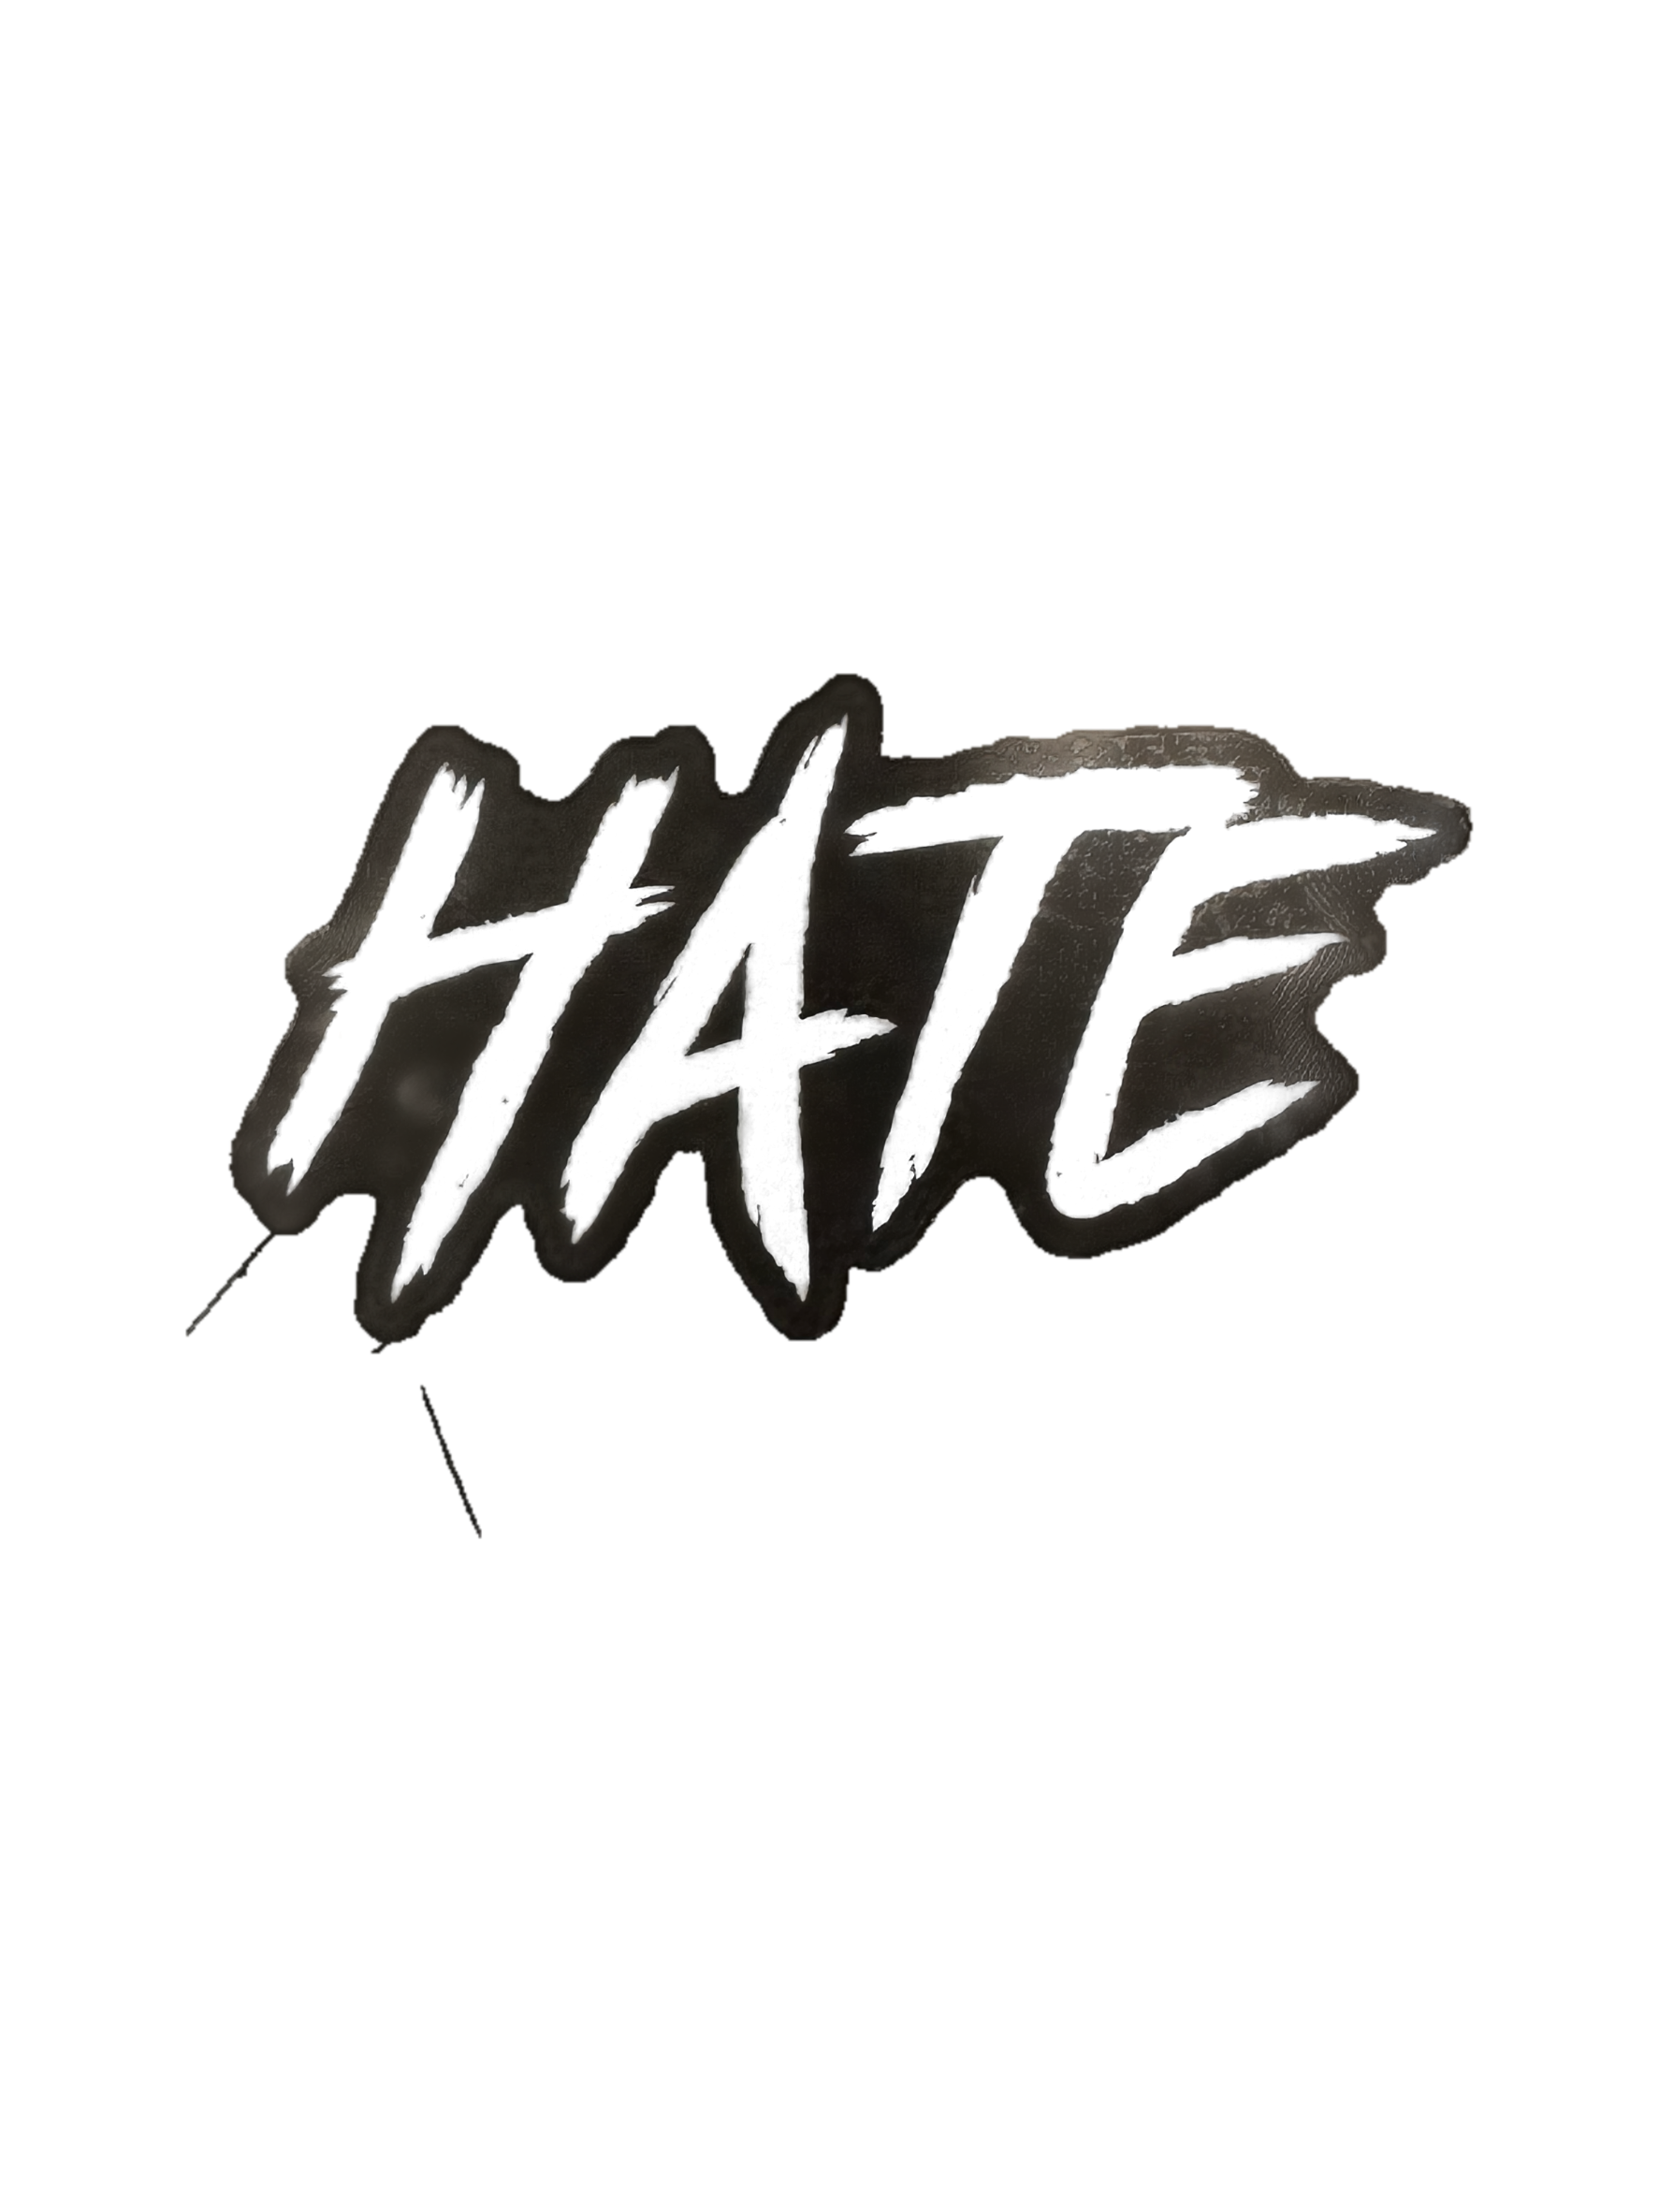 HATE (White) - Sticker